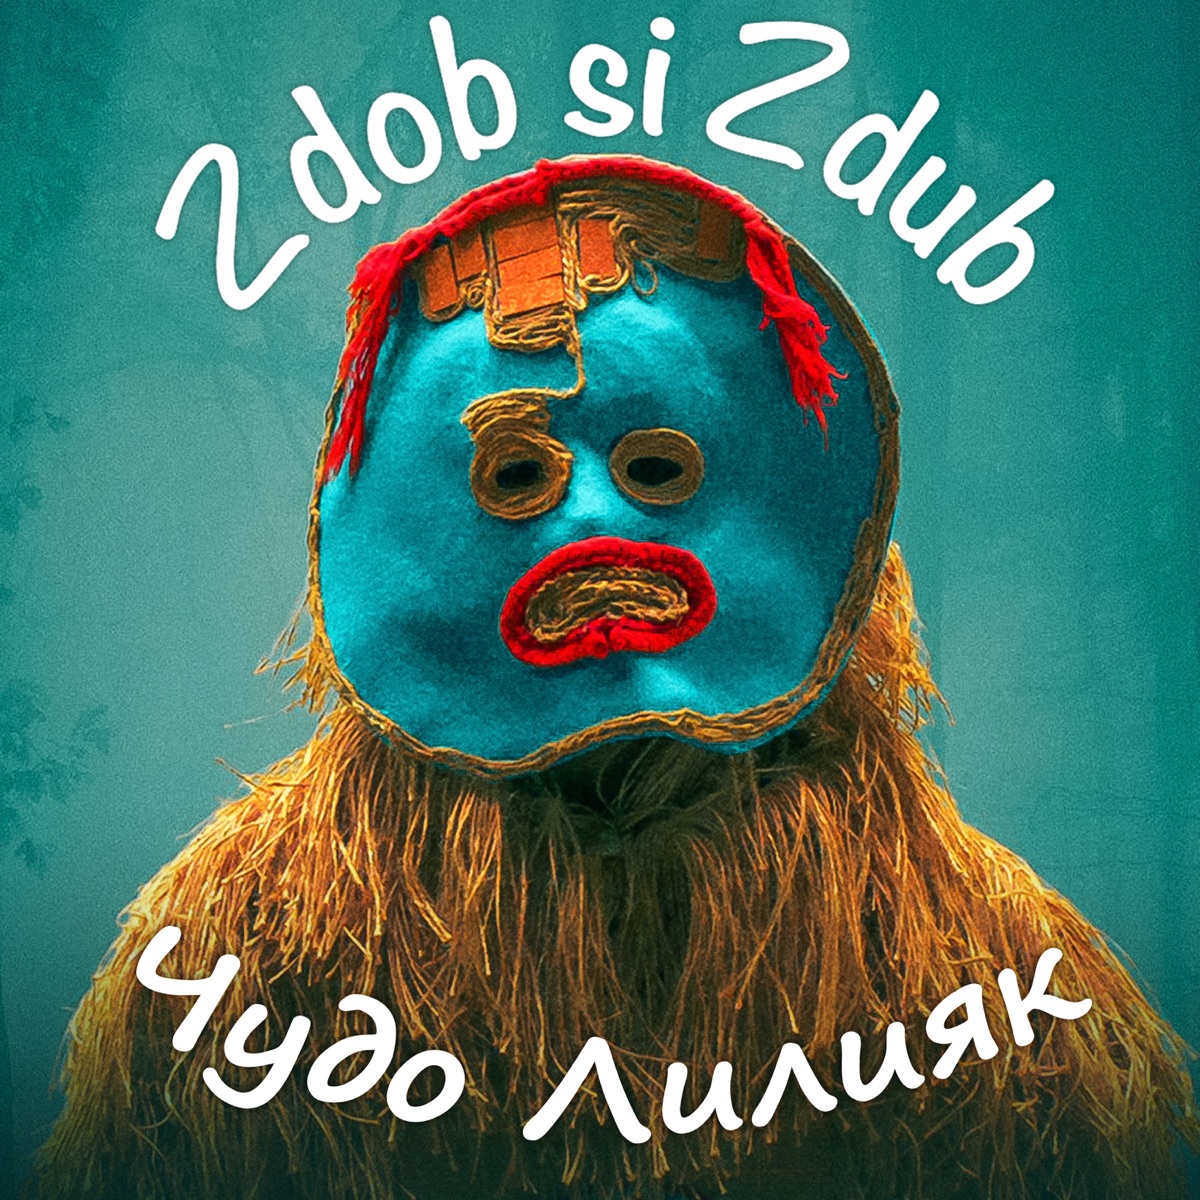 Lupul Solitar - Single by Zdob și Zdub on Apple Music